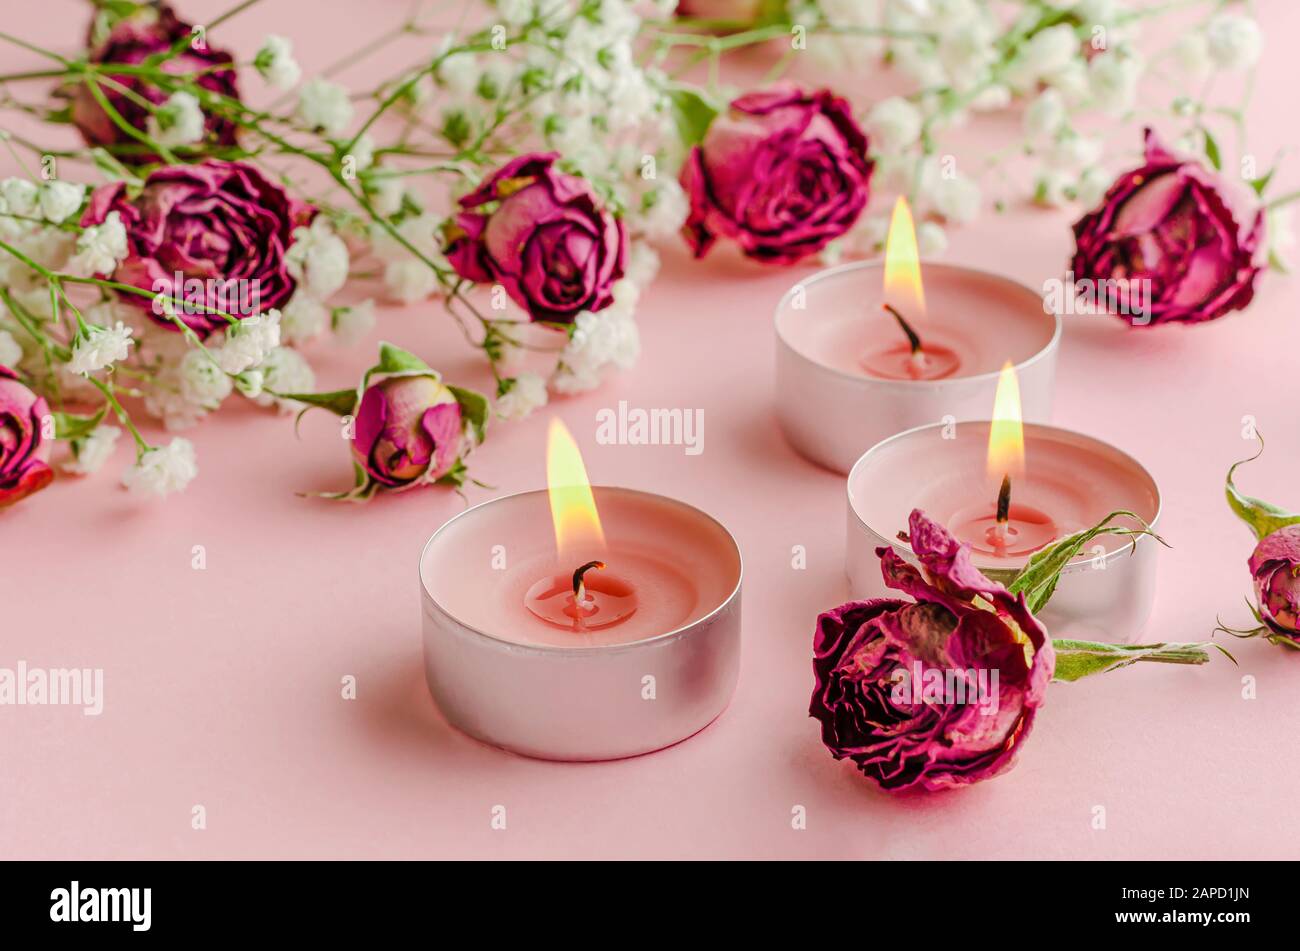 Brennende Aromakerzen und getrocknete Rosen auf rosa Hintergrund. Aromatherapie und Romantik-Konzept. Stockfoto